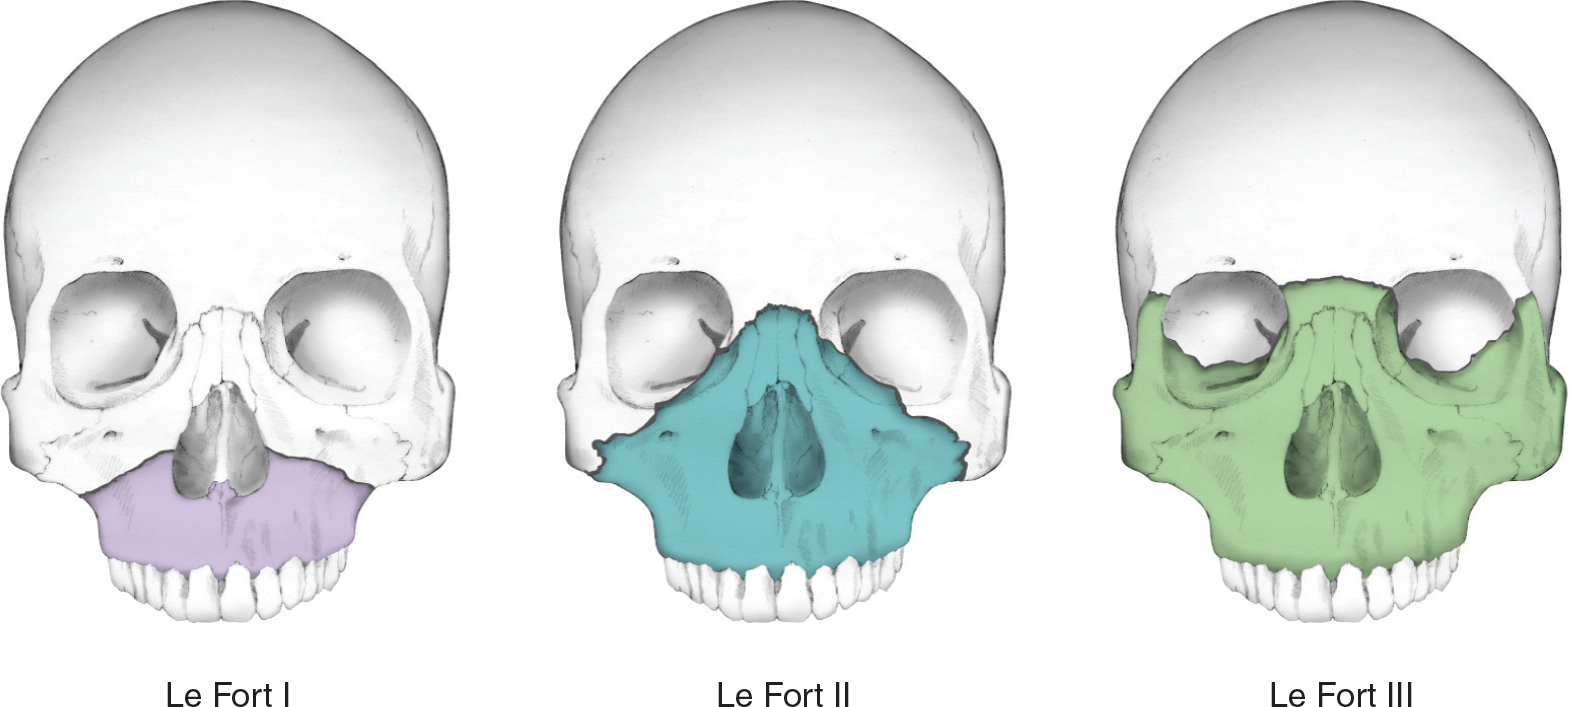 Перелом лицевого черепа. Перелом верхней челюсти Лефор 3. Переломы верхней челюсти по Лефор 1. Перелом верхней челюсти по Лефор 2. Лефор классификация переломов верхней челюсти.